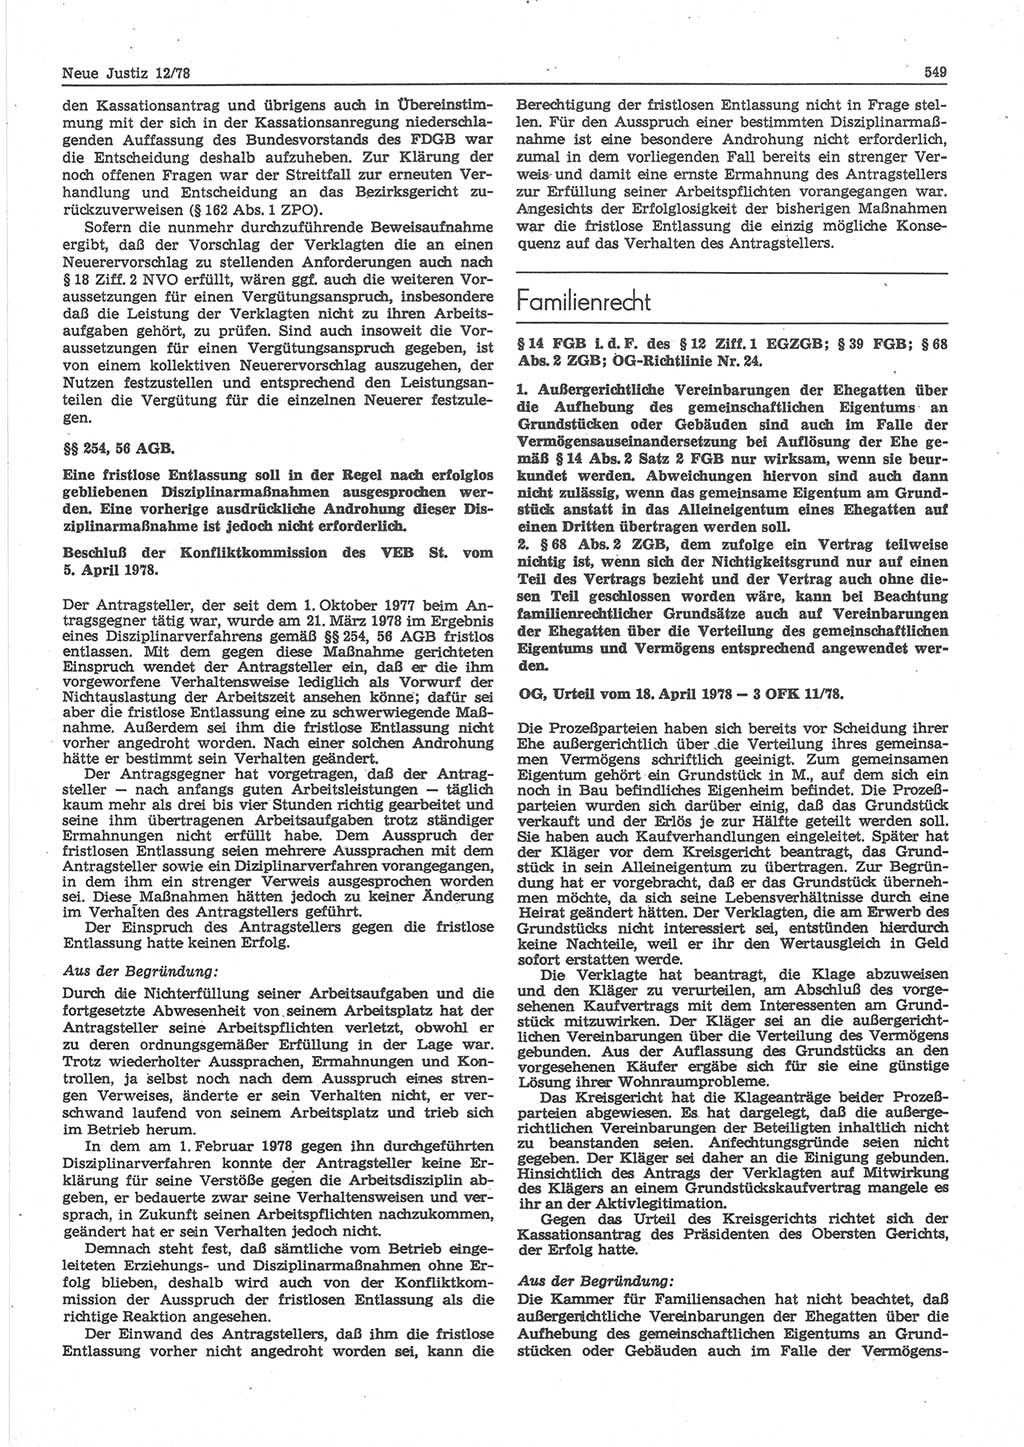 Neue Justiz (NJ), Zeitschrift für sozialistisches Recht und Gesetzlichkeit [Deutsche Demokratische Republik (DDR)], 32. Jahrgang 1978, Seite 549 (NJ DDR 1978, S. 549)